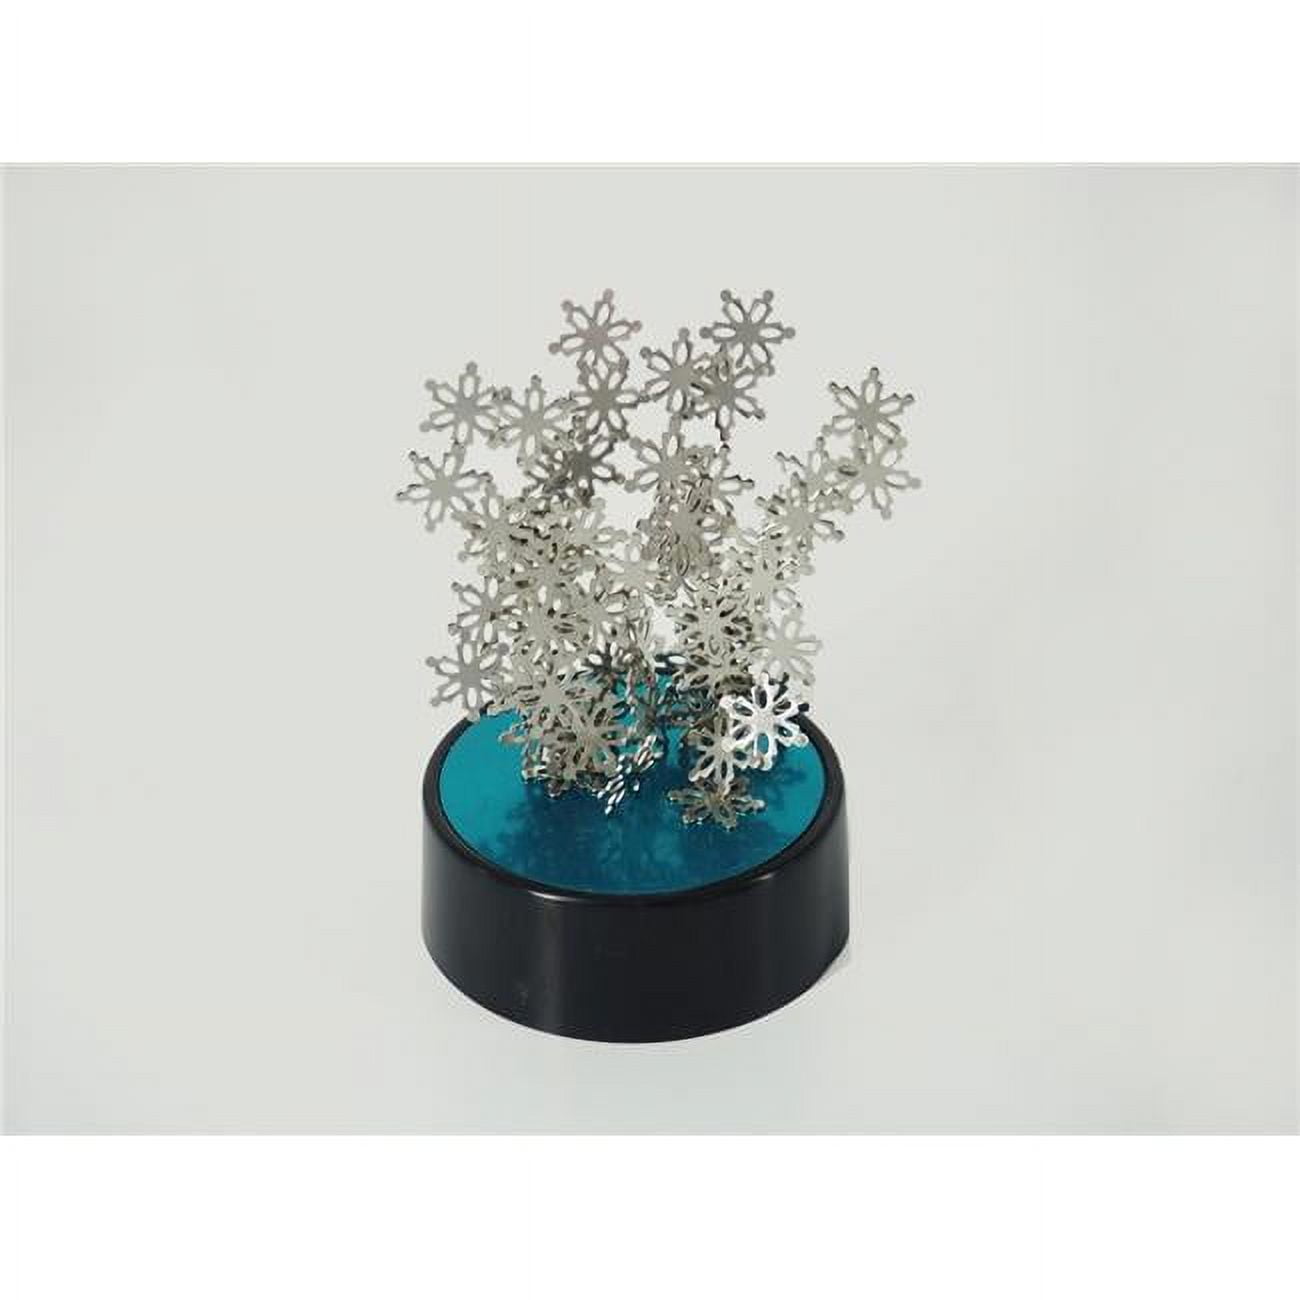 Magnetic Desktop Sculpture - Snowflakes